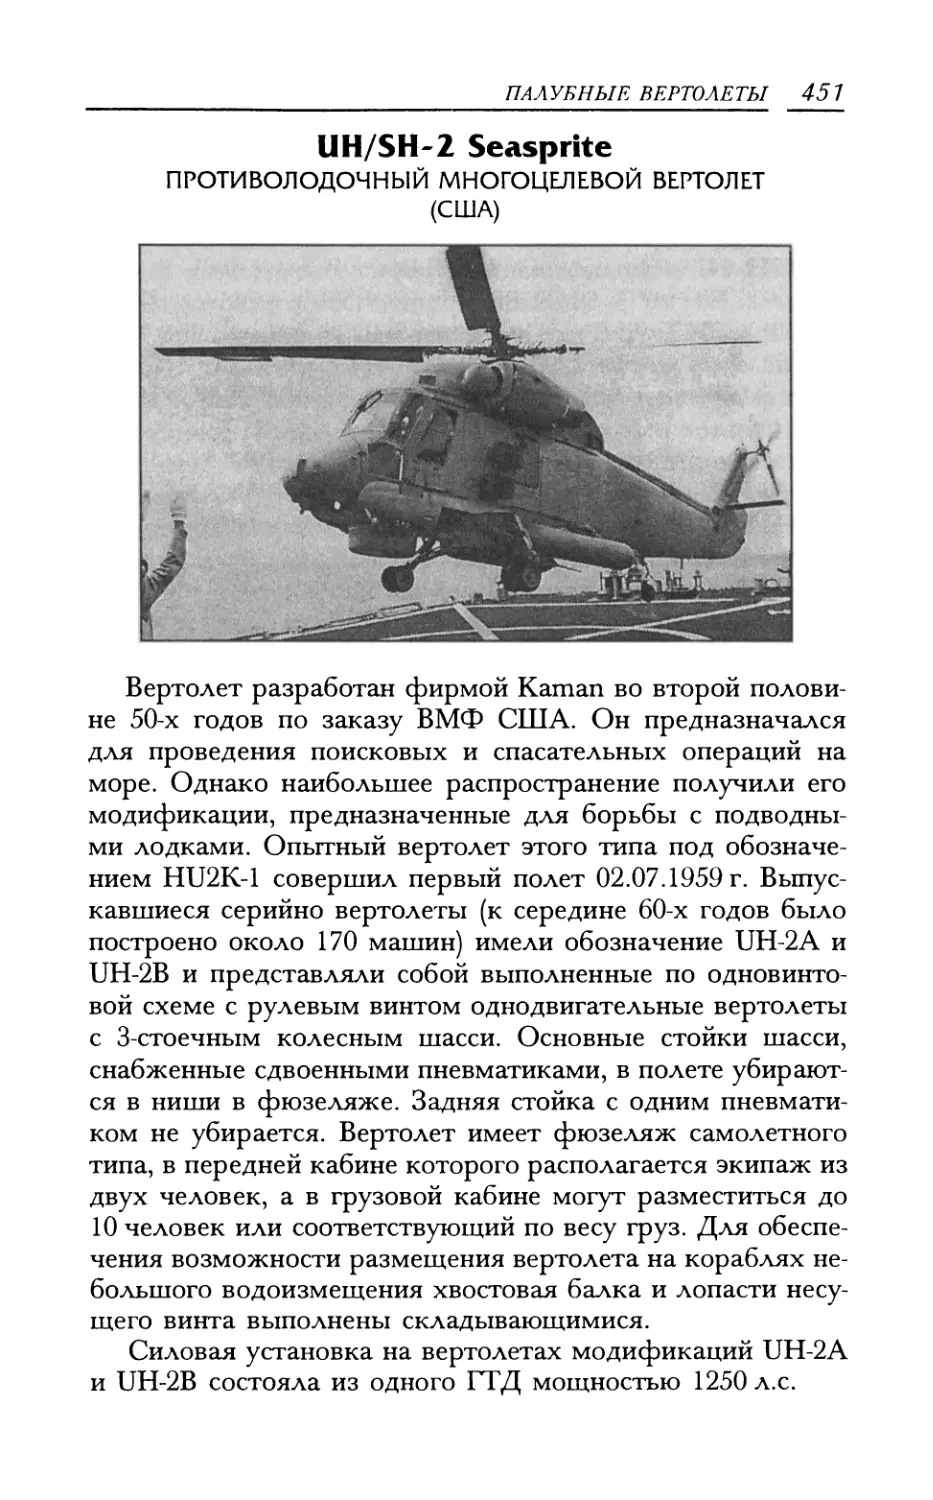 UH/SH-2 Seasprite